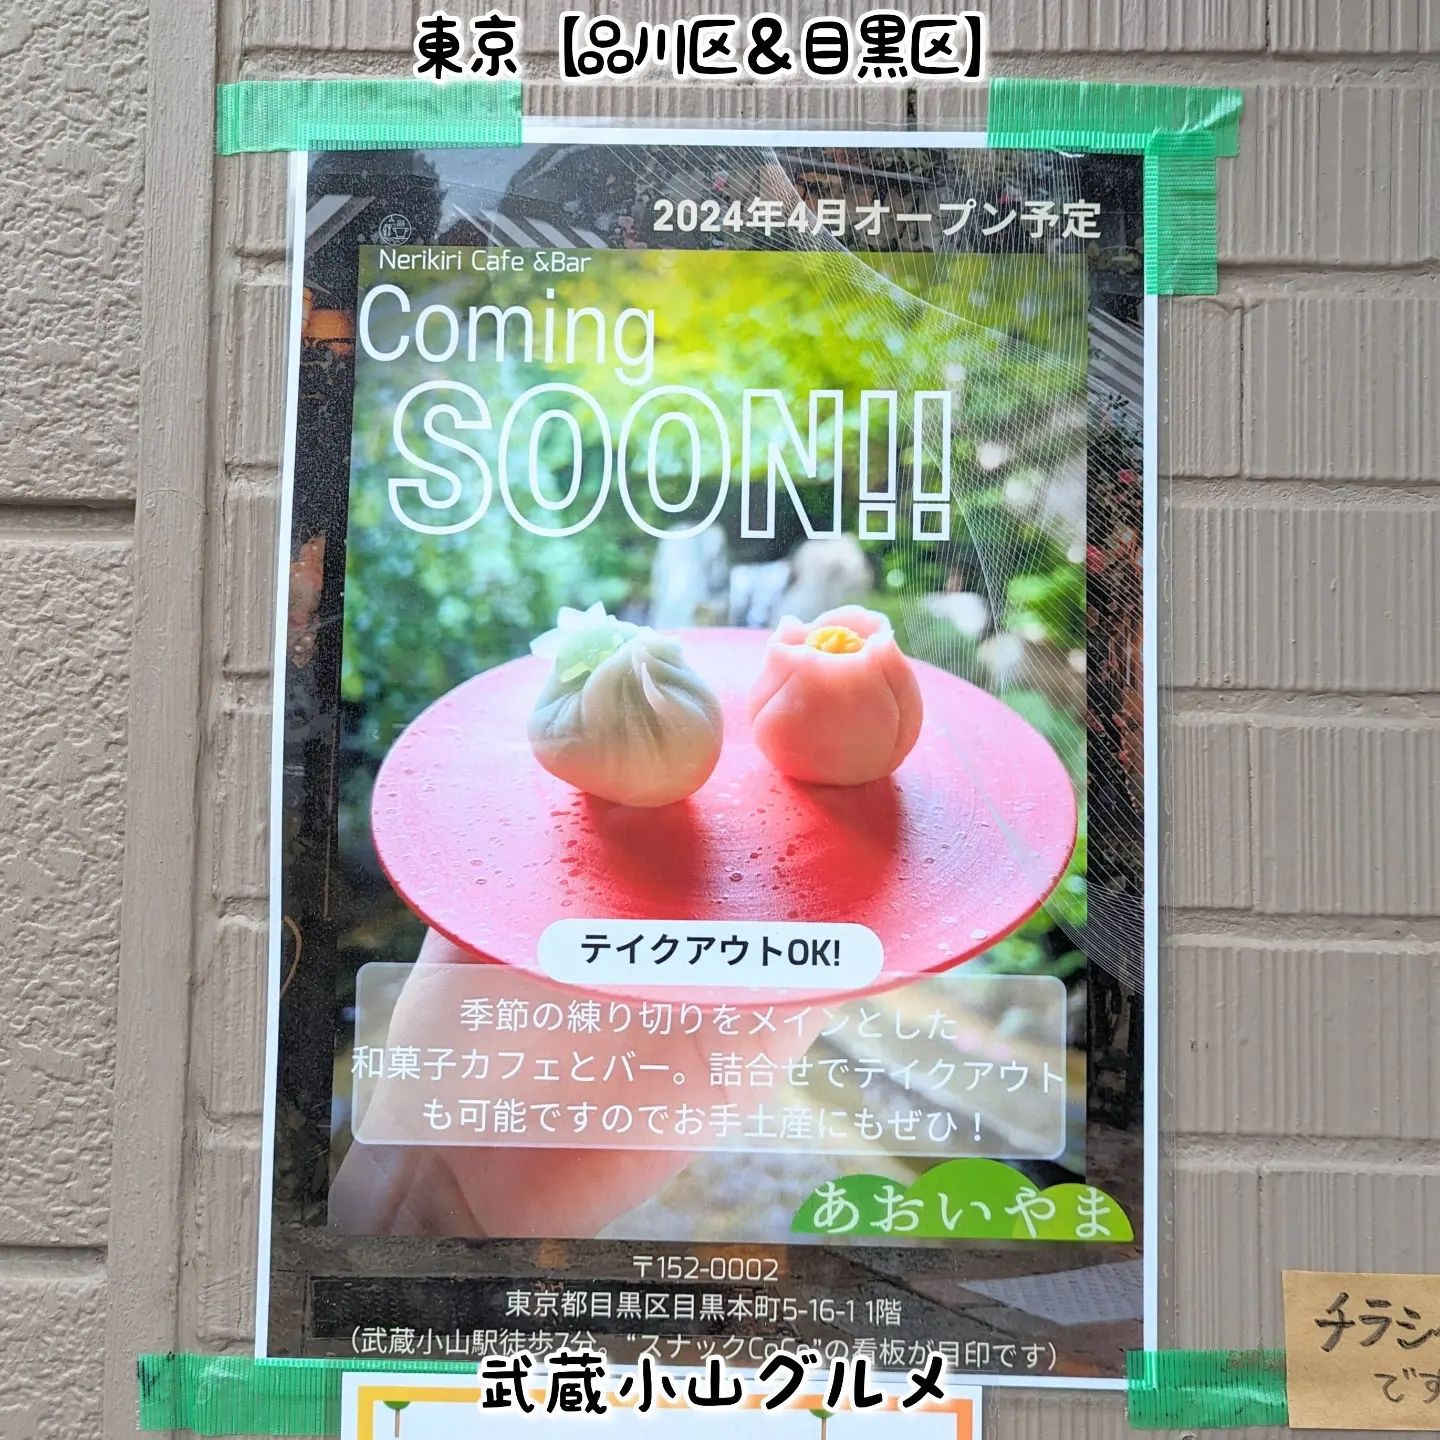 武蔵小山のグルメ情報「 あおいやま 」4月オープン予定！季節の練り切りがいただける和菓子カフェ＆バーとの事でございます。どうやら抹茶もいただけるようでございますぞ！あおいやま@aoiyama2024場所は、武蔵小山駅から26号線を目黒郵便方面へ300mほど進んで左手側にございます。平和通り商店街に入ると手前のスナックCOCOでございますね。【侍猫のグルメ情報とは】武蔵小山近隣のグルメ情報を住民向けに投稿しております！ぜひ「フォロー」＆「いいね」＆「保存」して次の投稿をへの応援お願いいたします！→ @musashikoyama.news#武蔵小山 #武蔵小山グルメ #武蔵小山グルメ情報 #西小山 #戸越銀座 #碑文谷 #戸越 #中延 #荏原中延 #目黒本町 #下目黒 #品川区 #品川区グルメ #目黒区 #目黒区グルメ #大田区 #東京 #東京グルメ #東京散歩 #東京観光 #東京デート #東京旅行#tokyotrip #tokyofood #japantravel #スイーツ #東京スイーツ #あおいやま #侍猫度